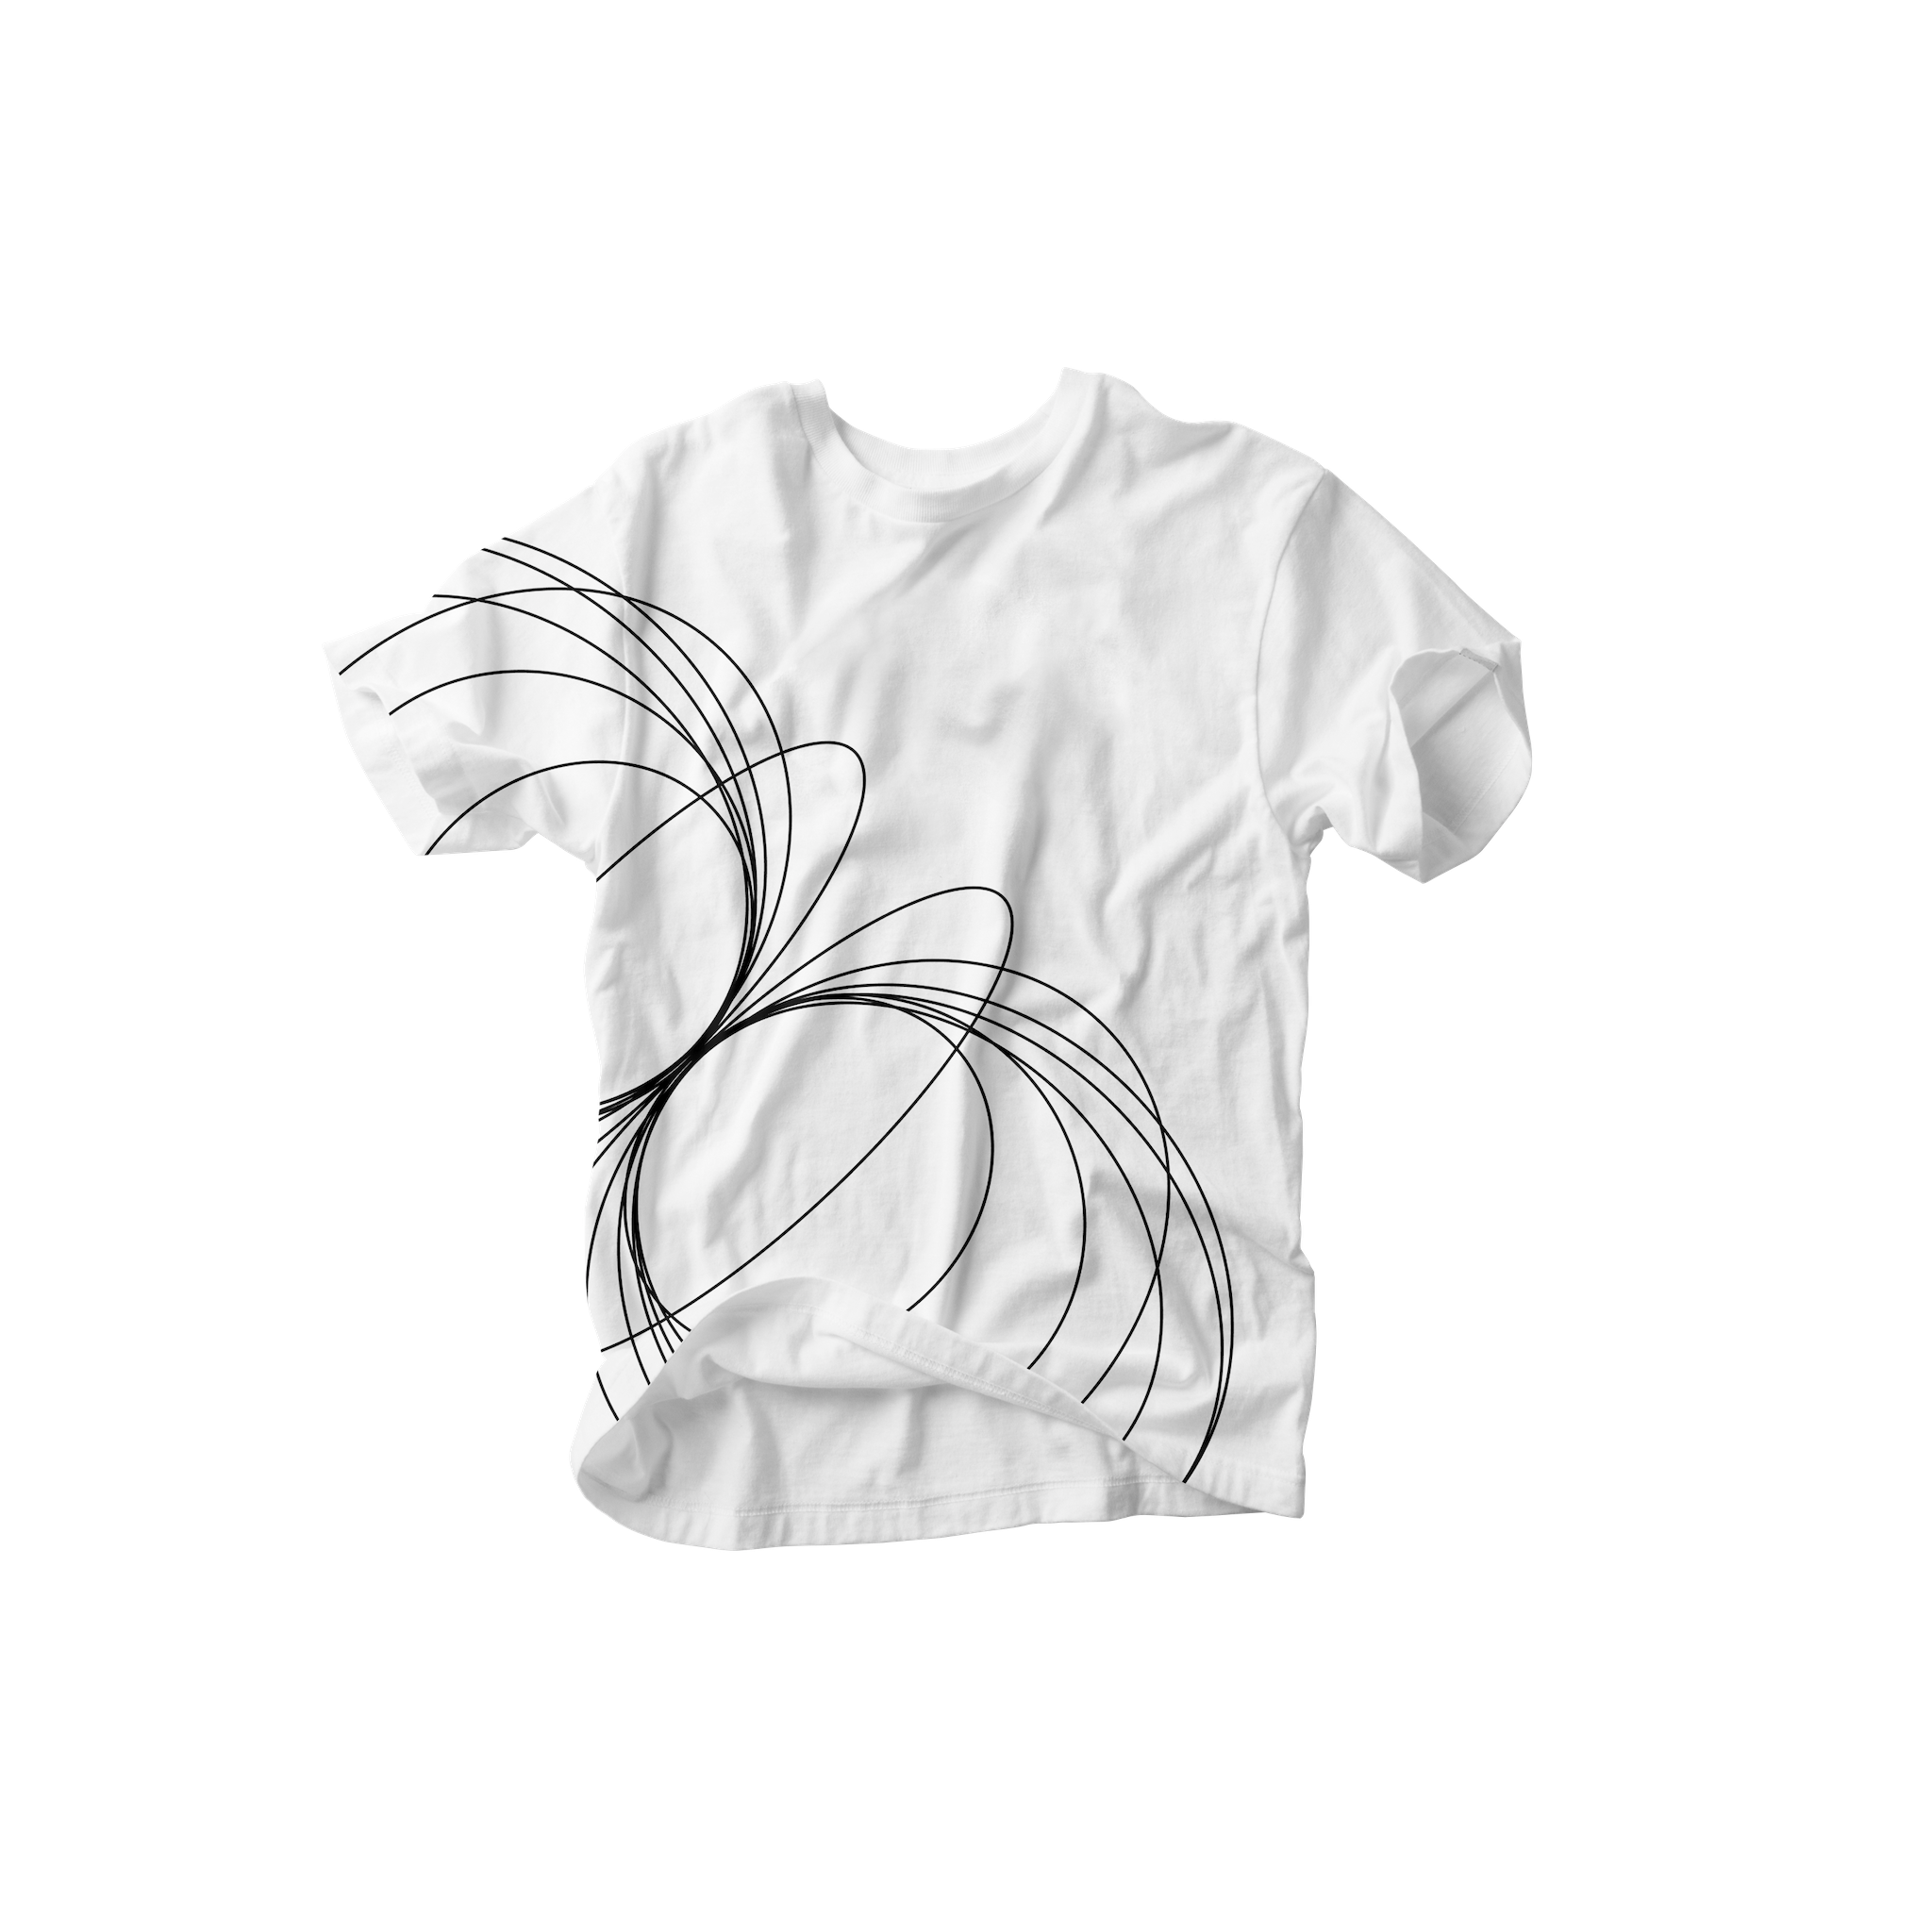 Acme Circles T-Shirt - image_6ef853fb-a25b-41d4-a153-0424275e5bc9